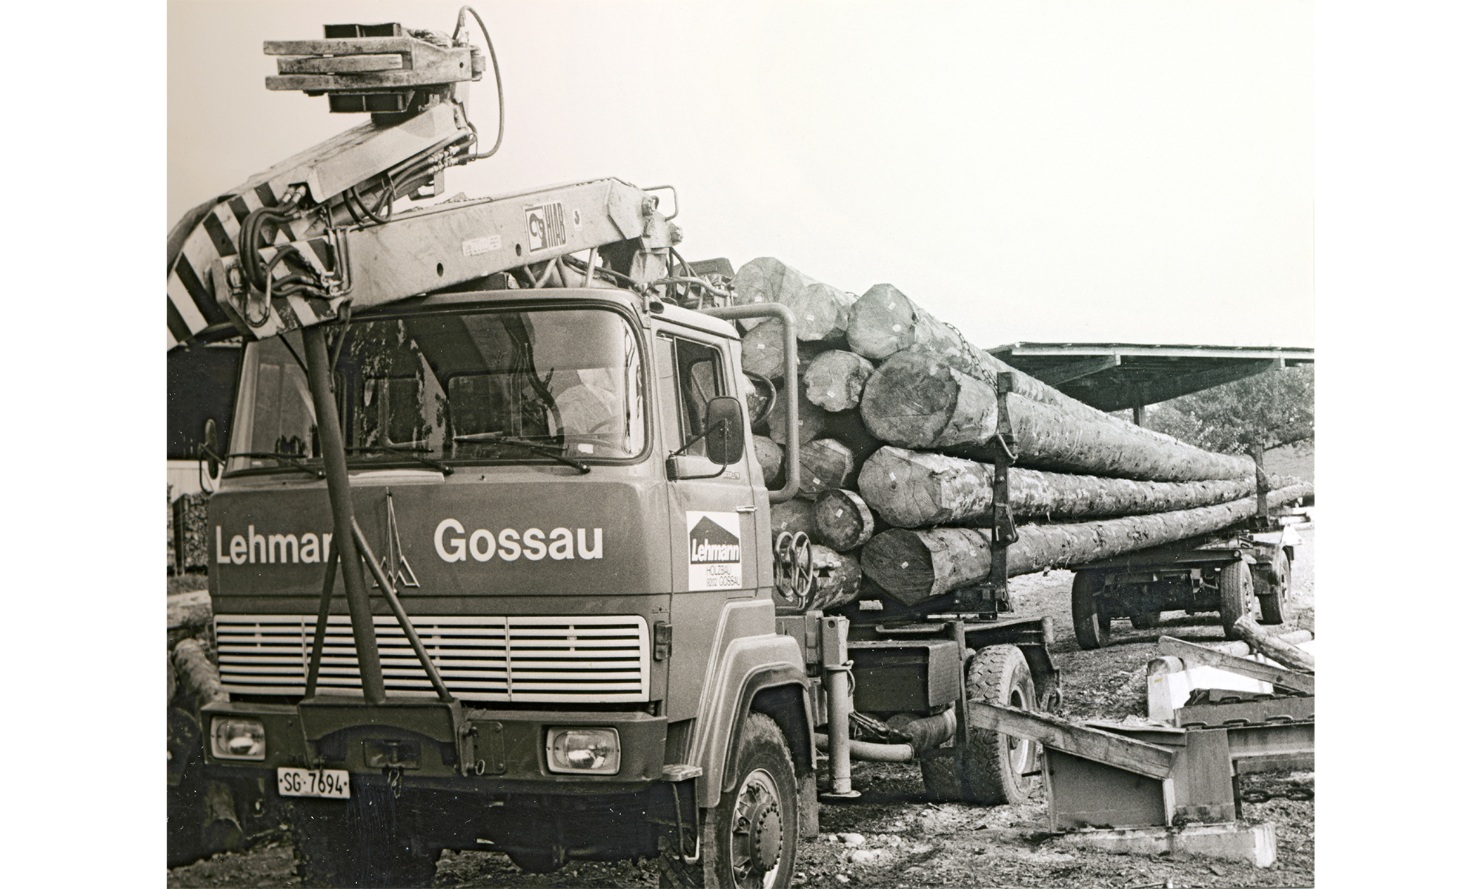 Altes Foto eines Rundholztransport-Lastwagens